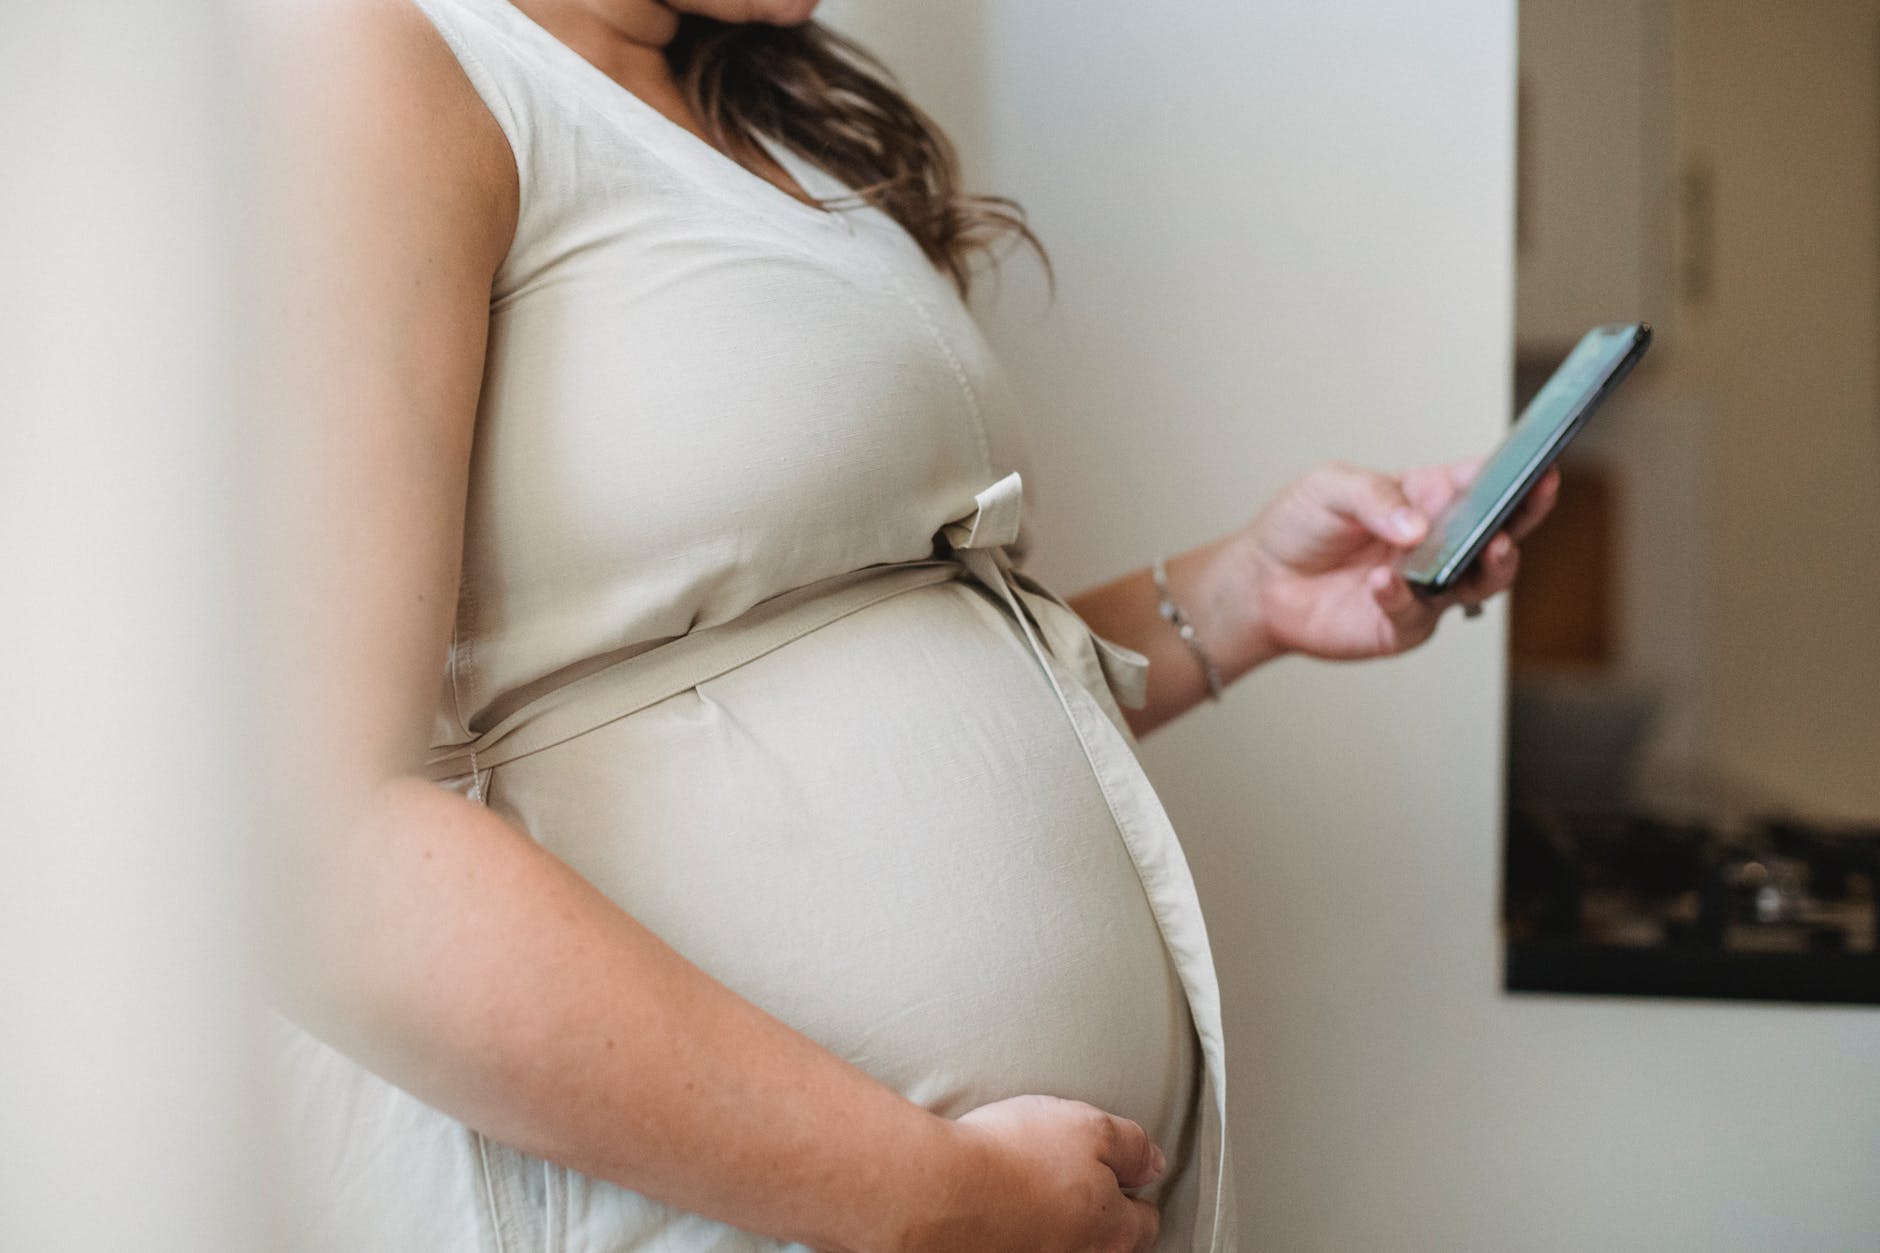 Frau Clark weigerte sich, nachzugeben, selbst als Samantha schwanger wurde. | Quelle: Pexels